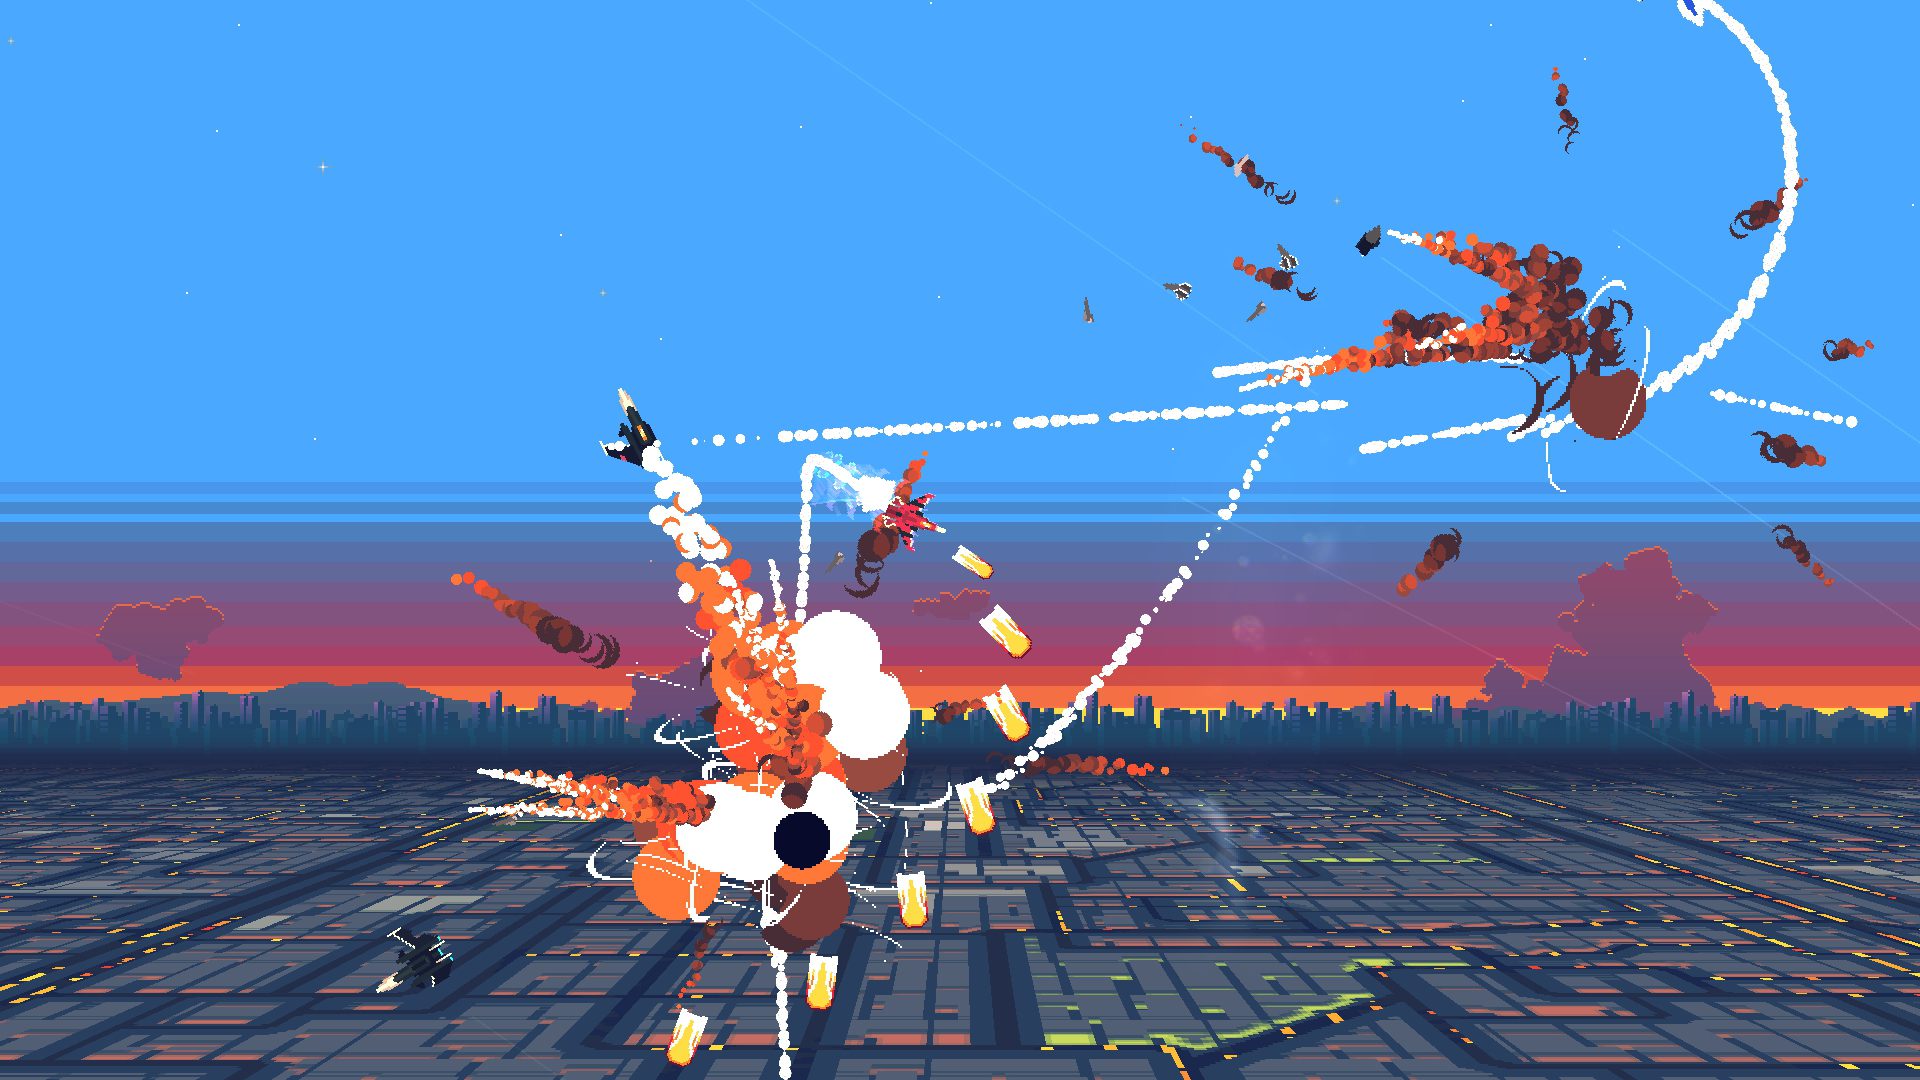 Aerial dogfighting game ‘Jet Lancer’ gets slick reveal trailer